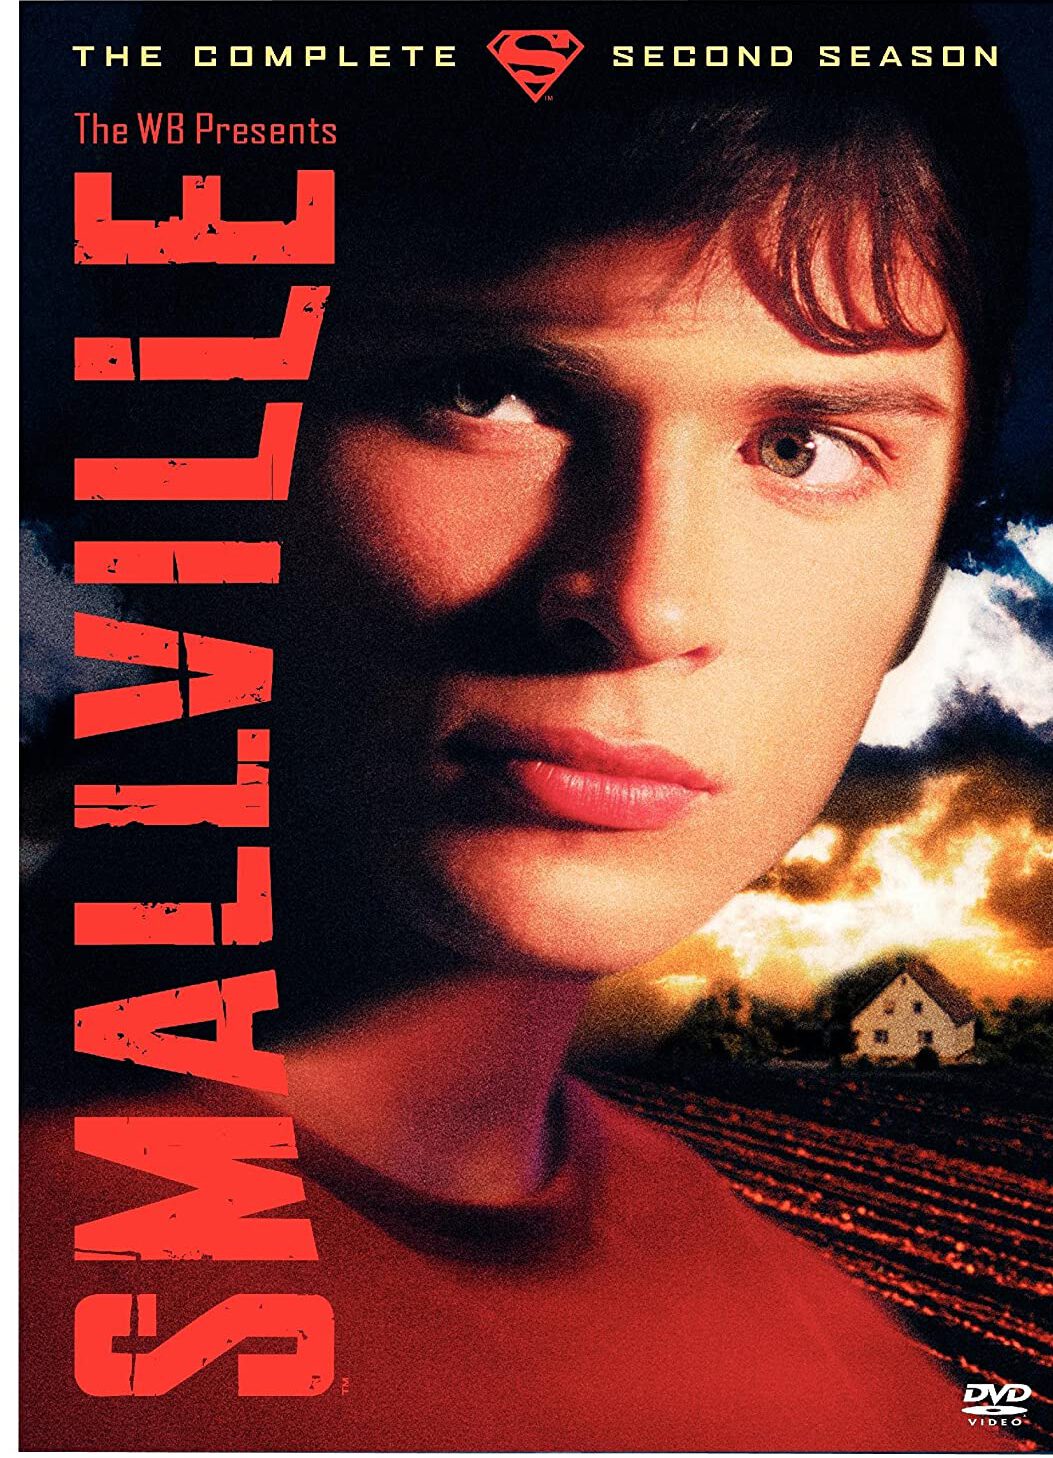 ดูหนังออนไลน์ฟรี Smallville สมอลวิลล์ หนุ่มน้อยซุปเปอร์แมน ปี 2 ตอนที่ 11